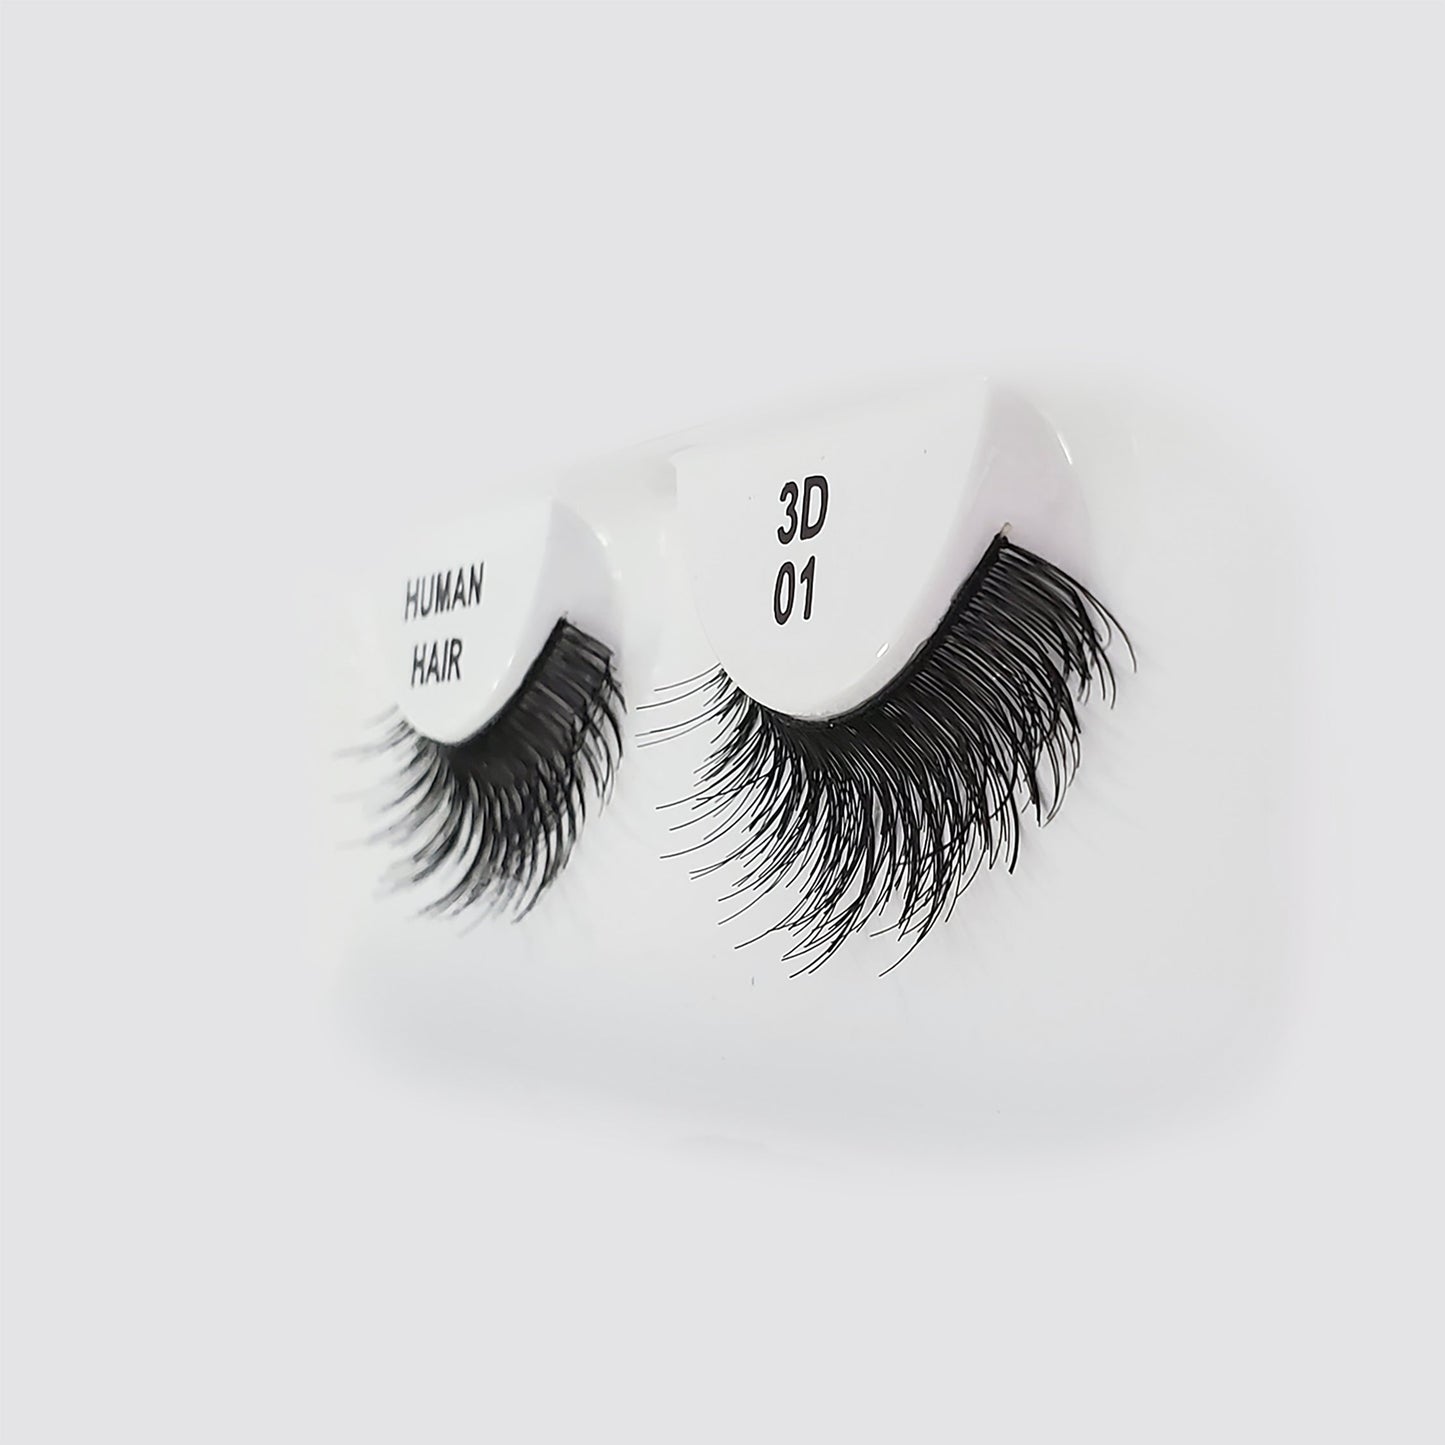 #3D 01 - 100% Human Remy Hair Eyelash